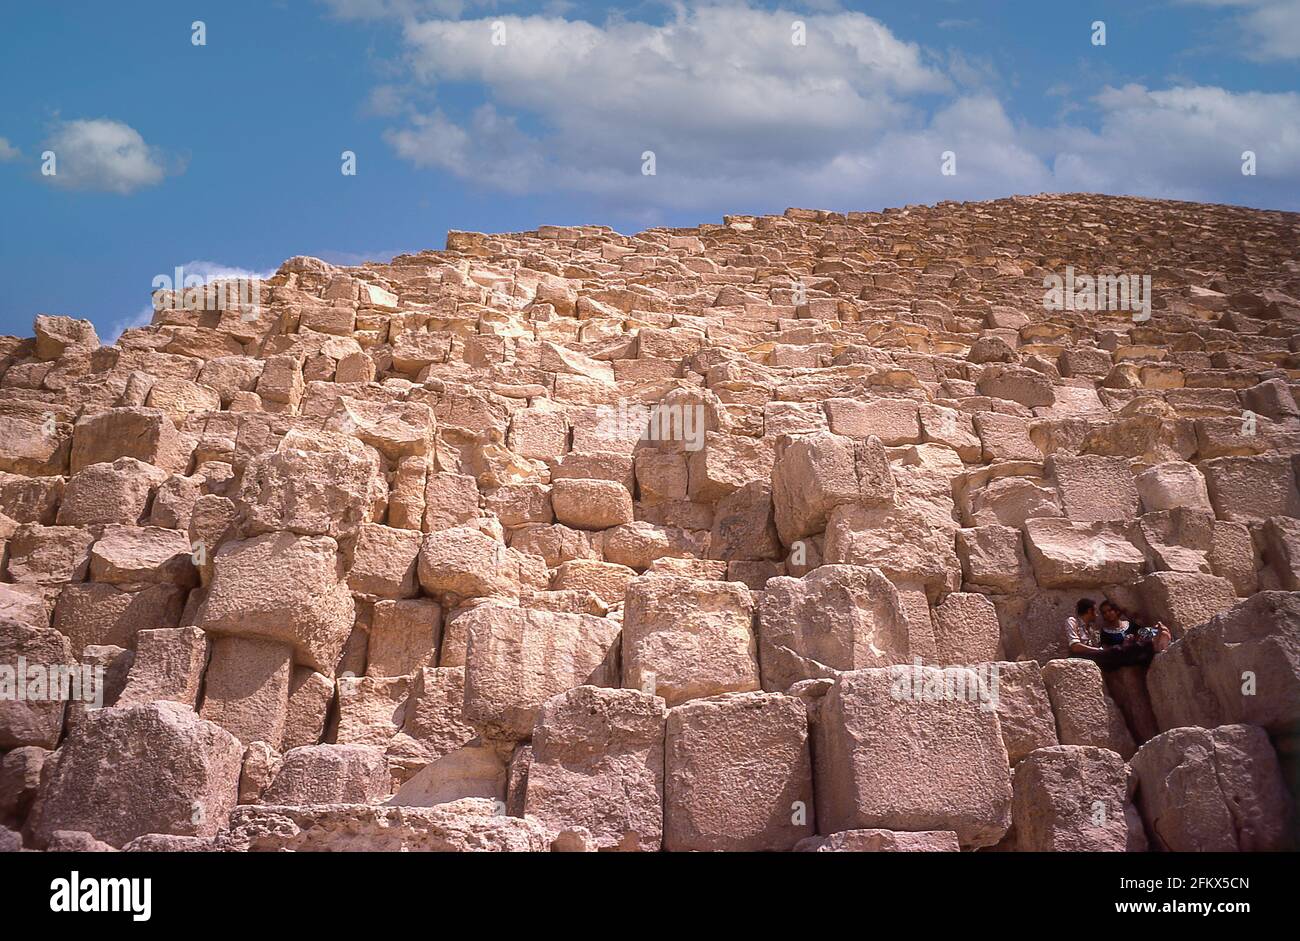 Les blocs de basalte du temple de la pyramide, la Grande Pyramide de Gizeh, Gizeh, Govergate de Gizeh, République d'Égypte Banque D'Images